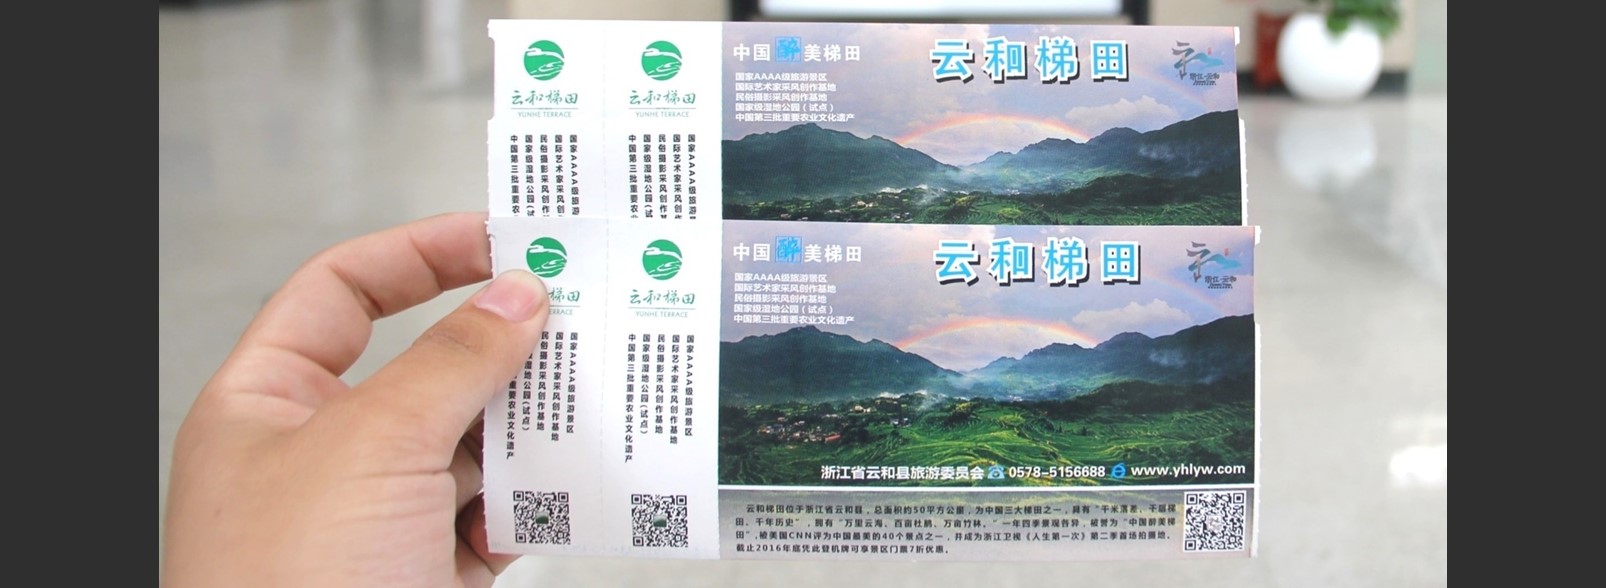 杭州萧山机场广告-国内国际出发全覆盖登机牌